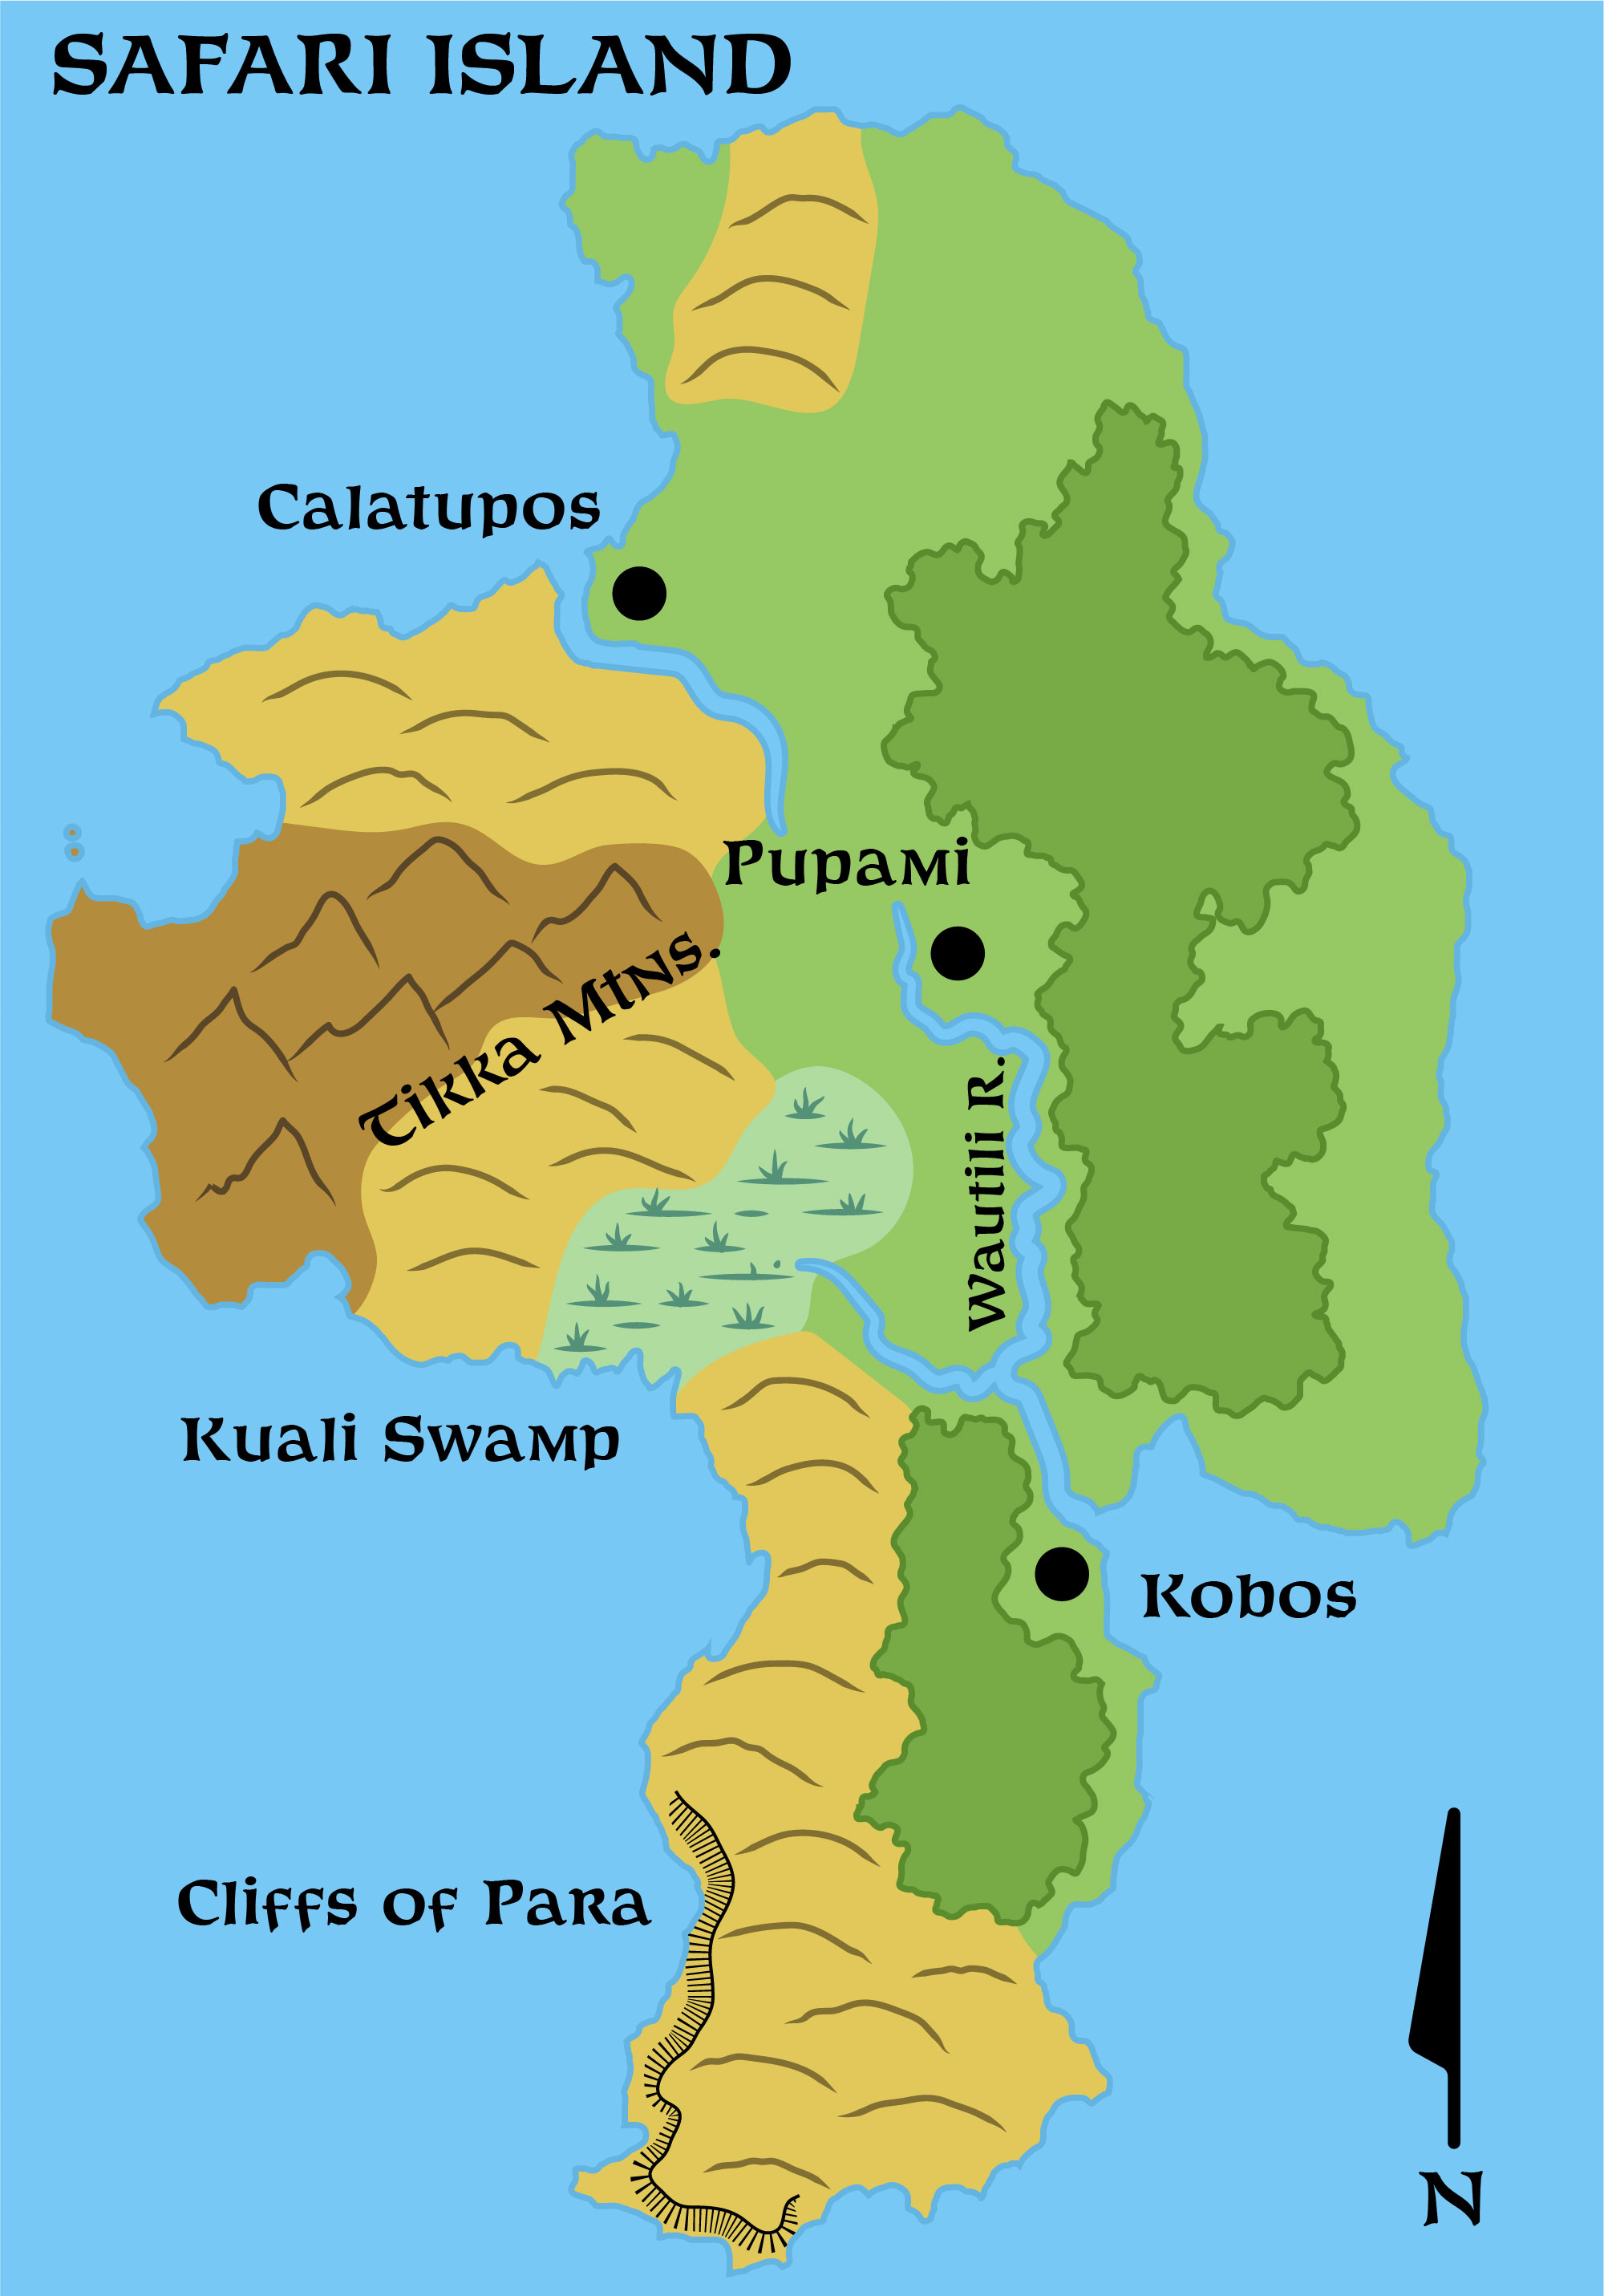 Colourised replica of GAZ4’s map of Safari Island